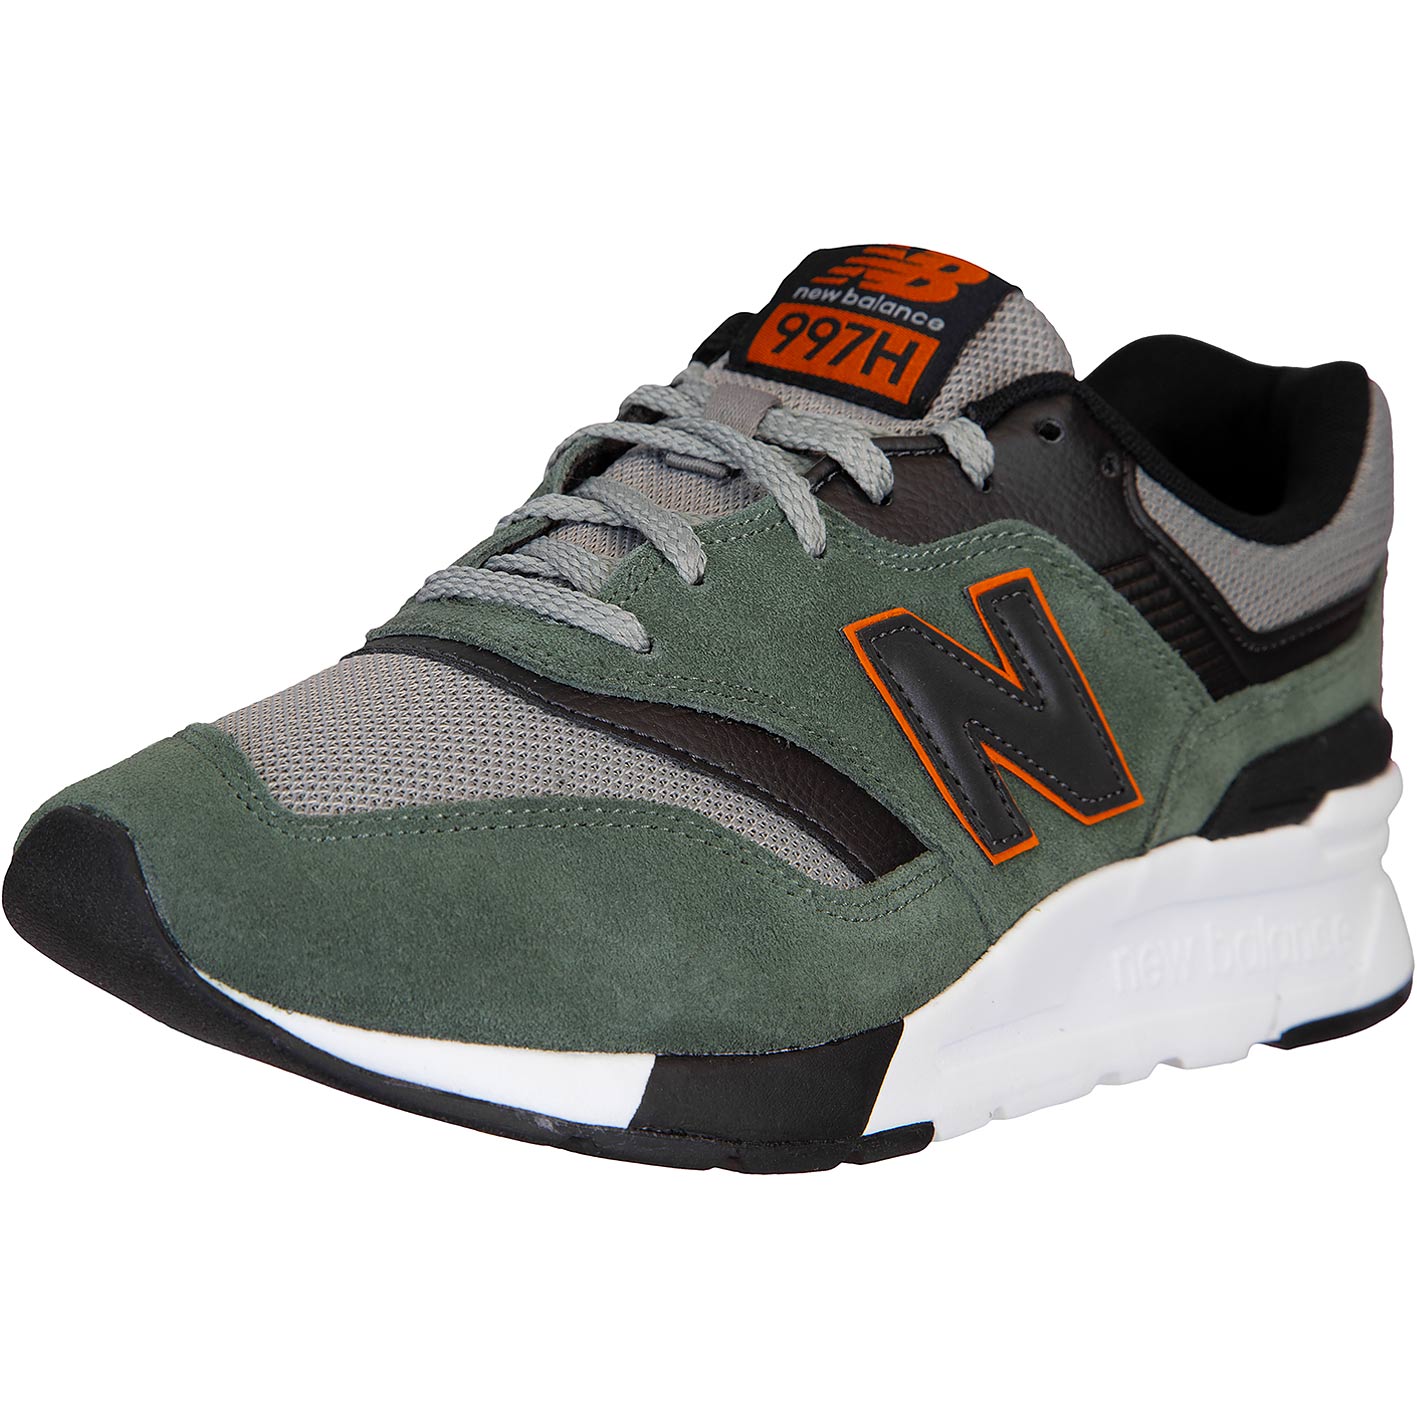 ☆ New Balance 997H Sneaker Schuhe grün/rot - hier bestellen!